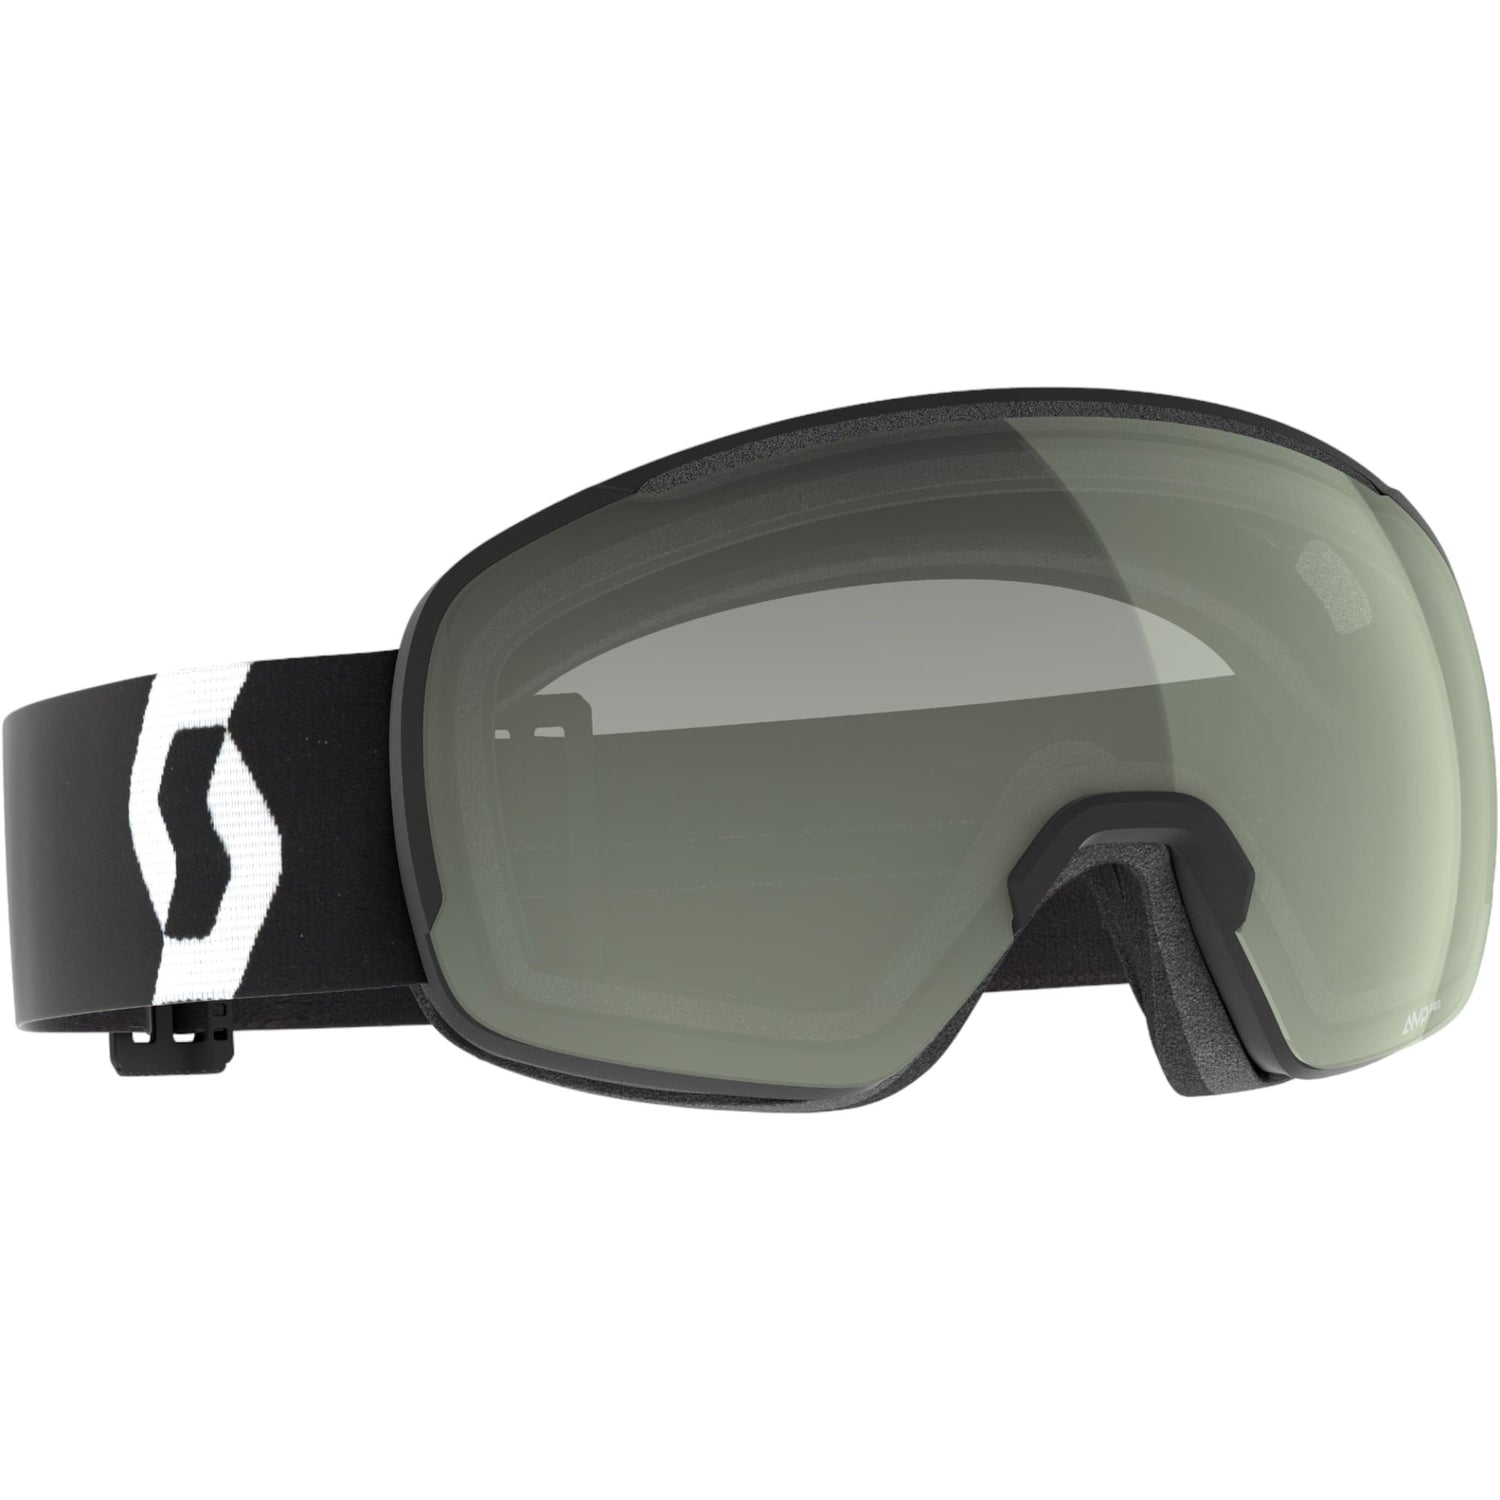 Les lunettes de ski à la vue pour les porteurs de lunettes